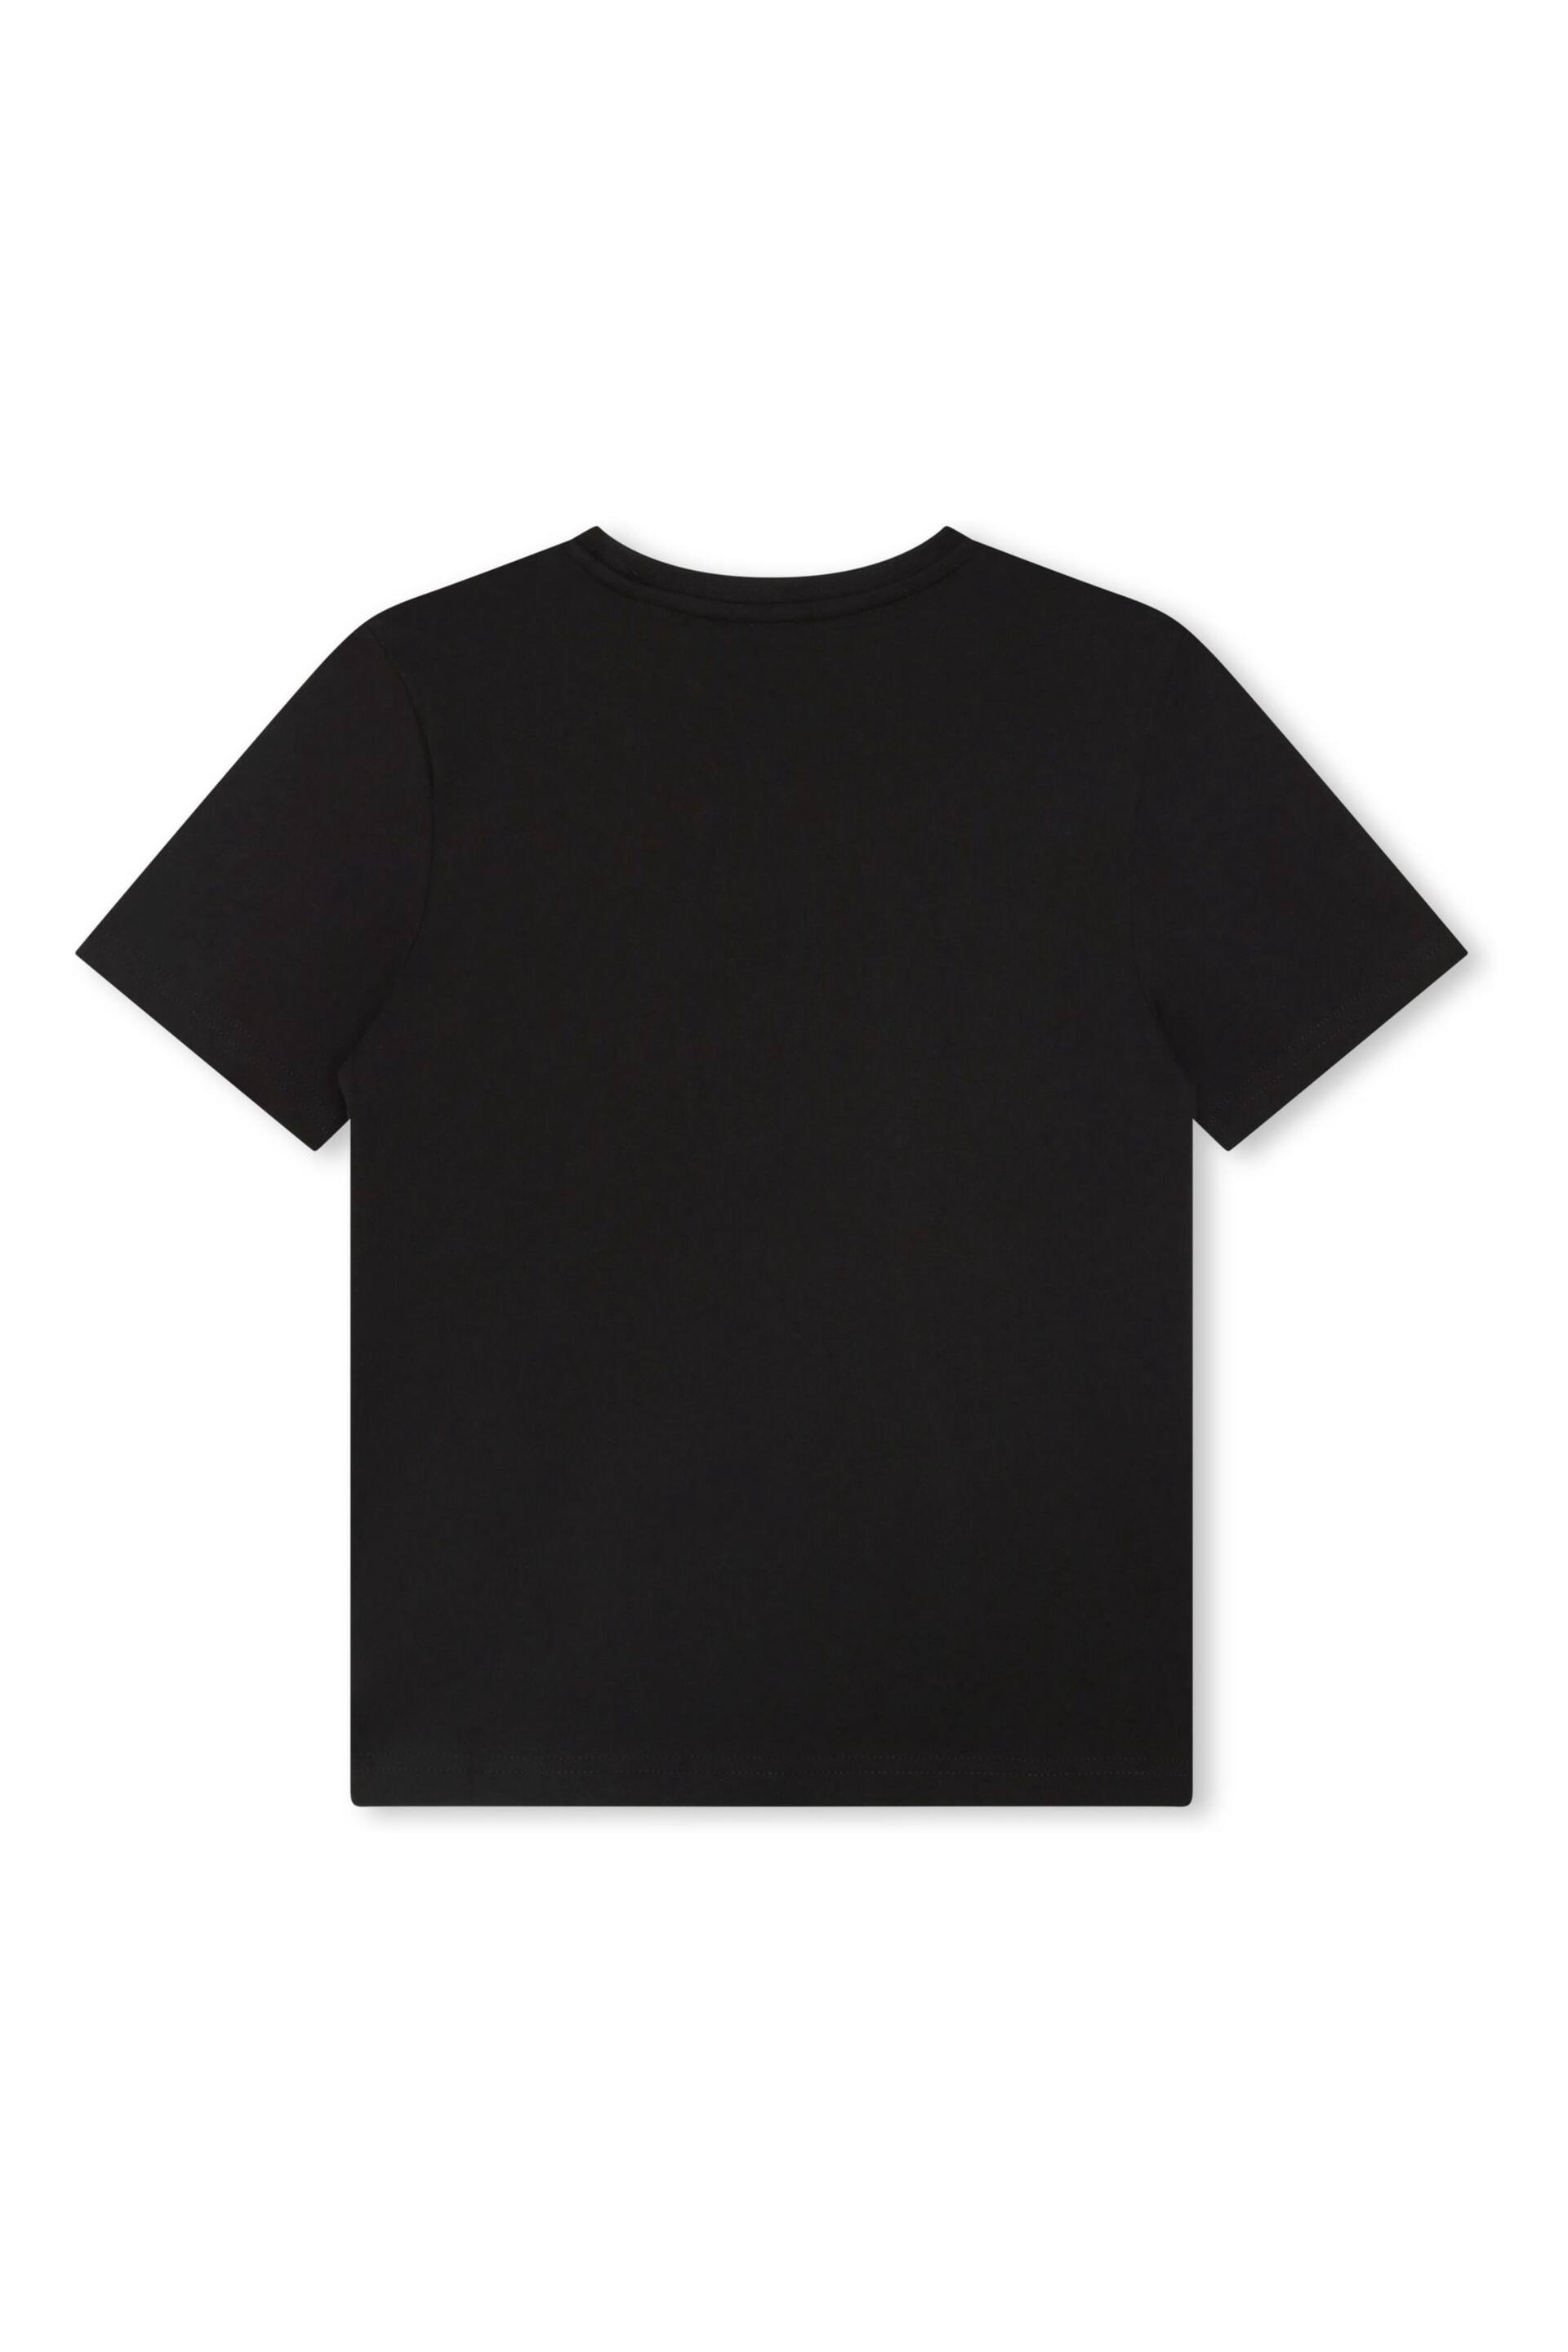 BOSS Black Short Sleeved Logo T-Shirt - Image 3 of 3